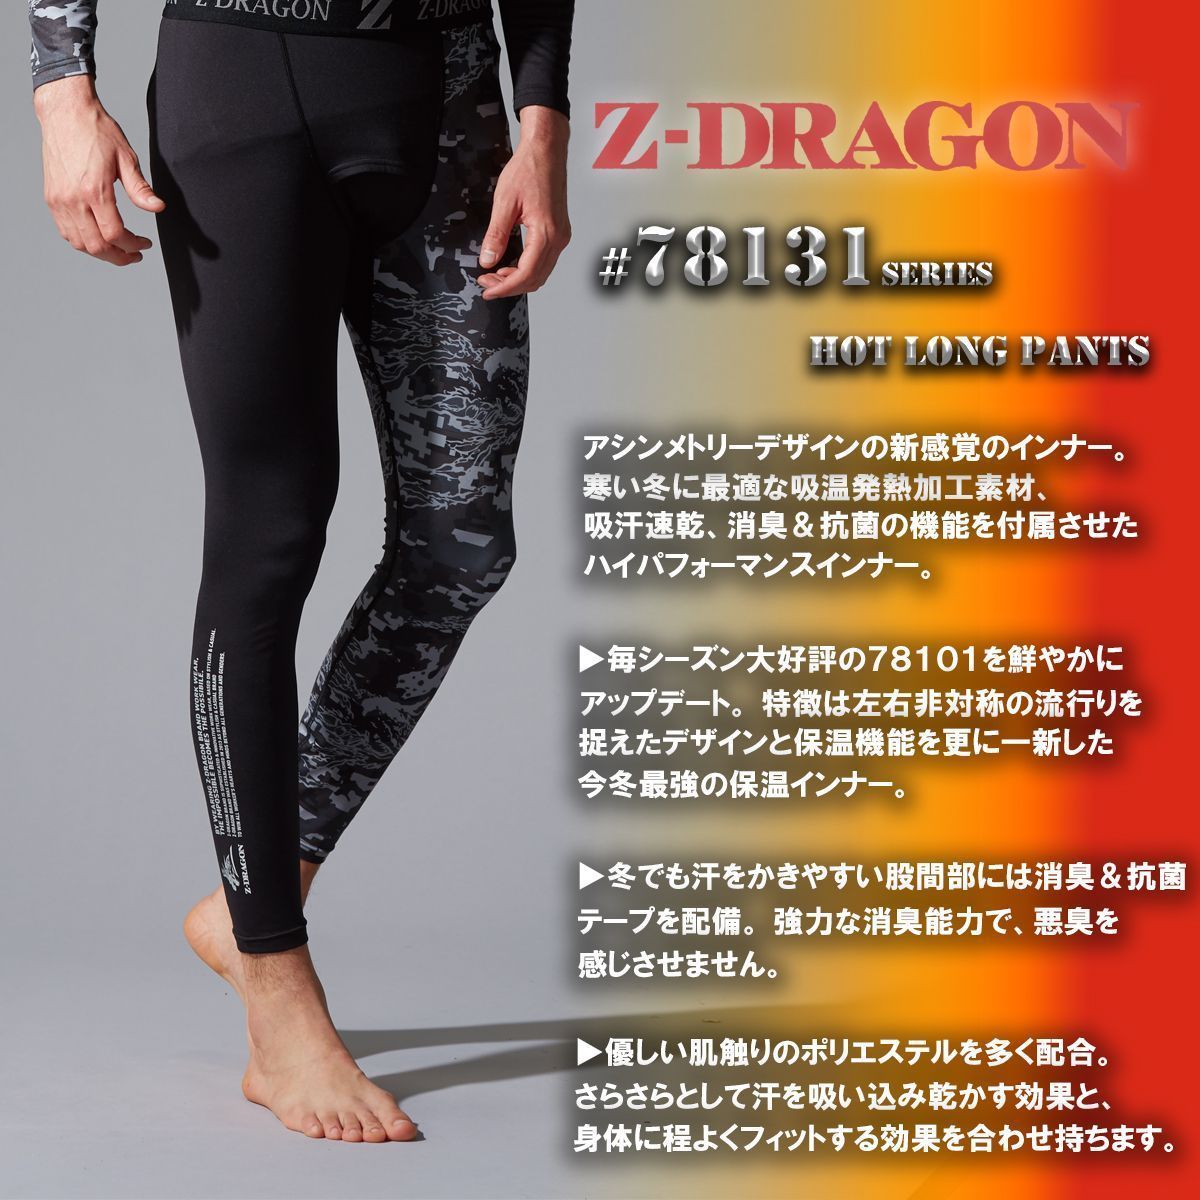 Dragon Compression Leggings